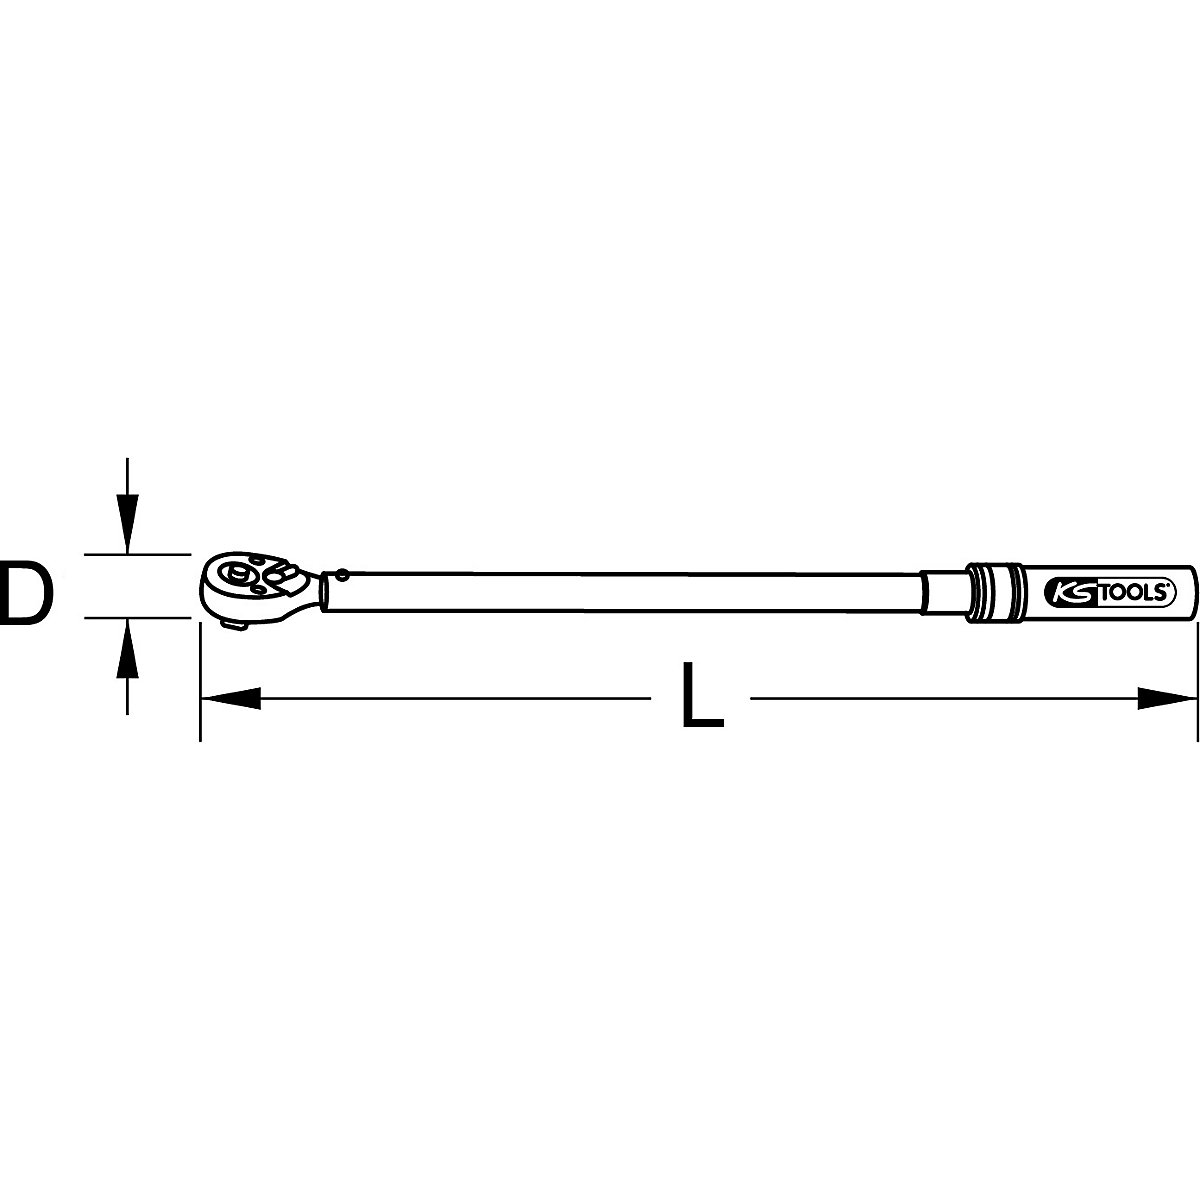 Chiave dinamometrica per settore industriale, reversibile – KS Tools (Foto prodotto 9)-8